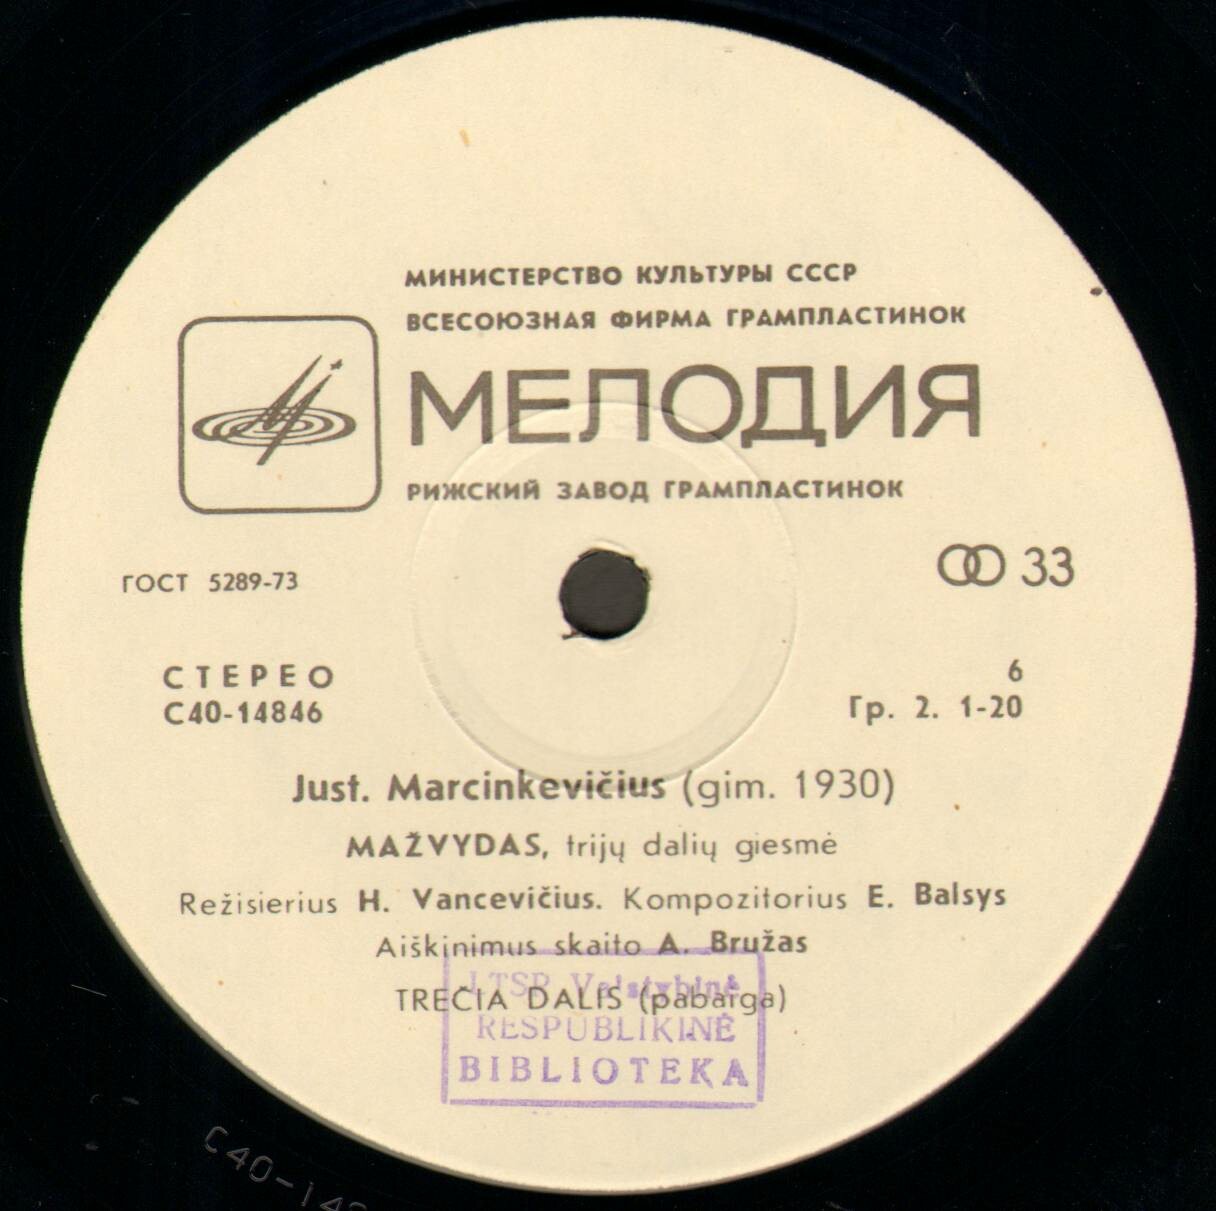 Ю. МАРЦИНКЯВИЧЮС (1930):